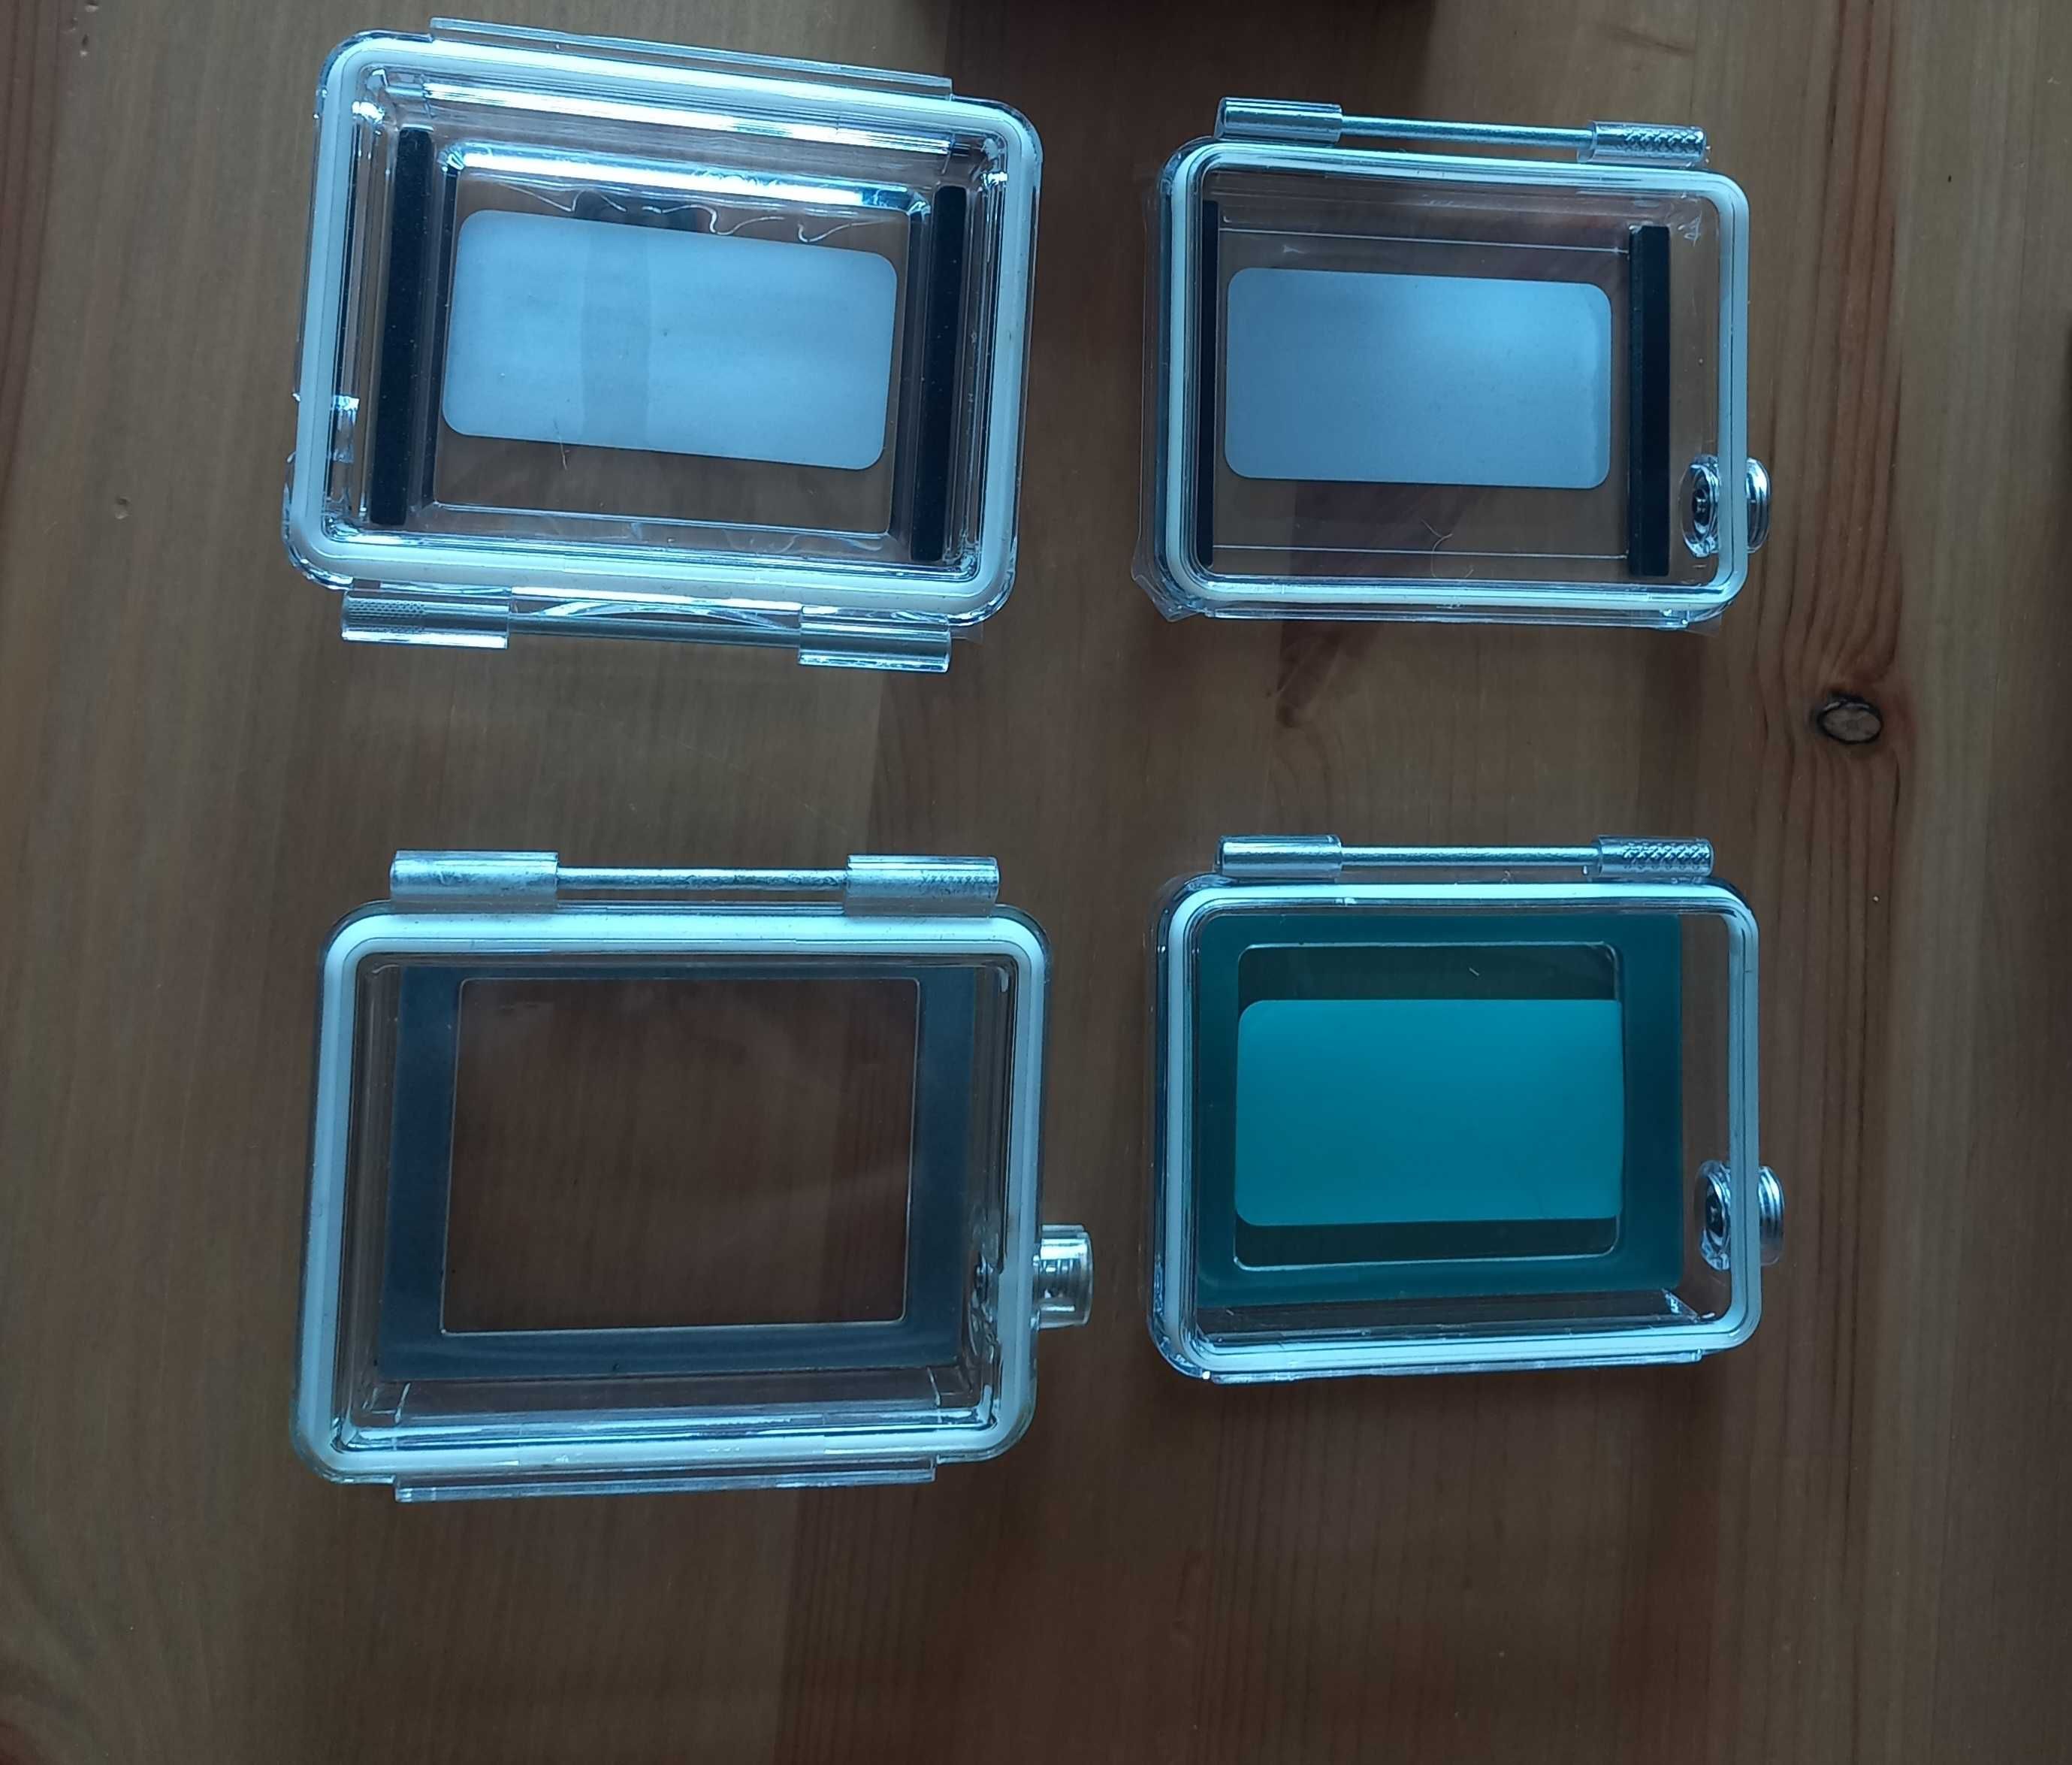 Conjunto de 5 tampas estanques GoPro hero 1 e 2 compatíveis com LCD.